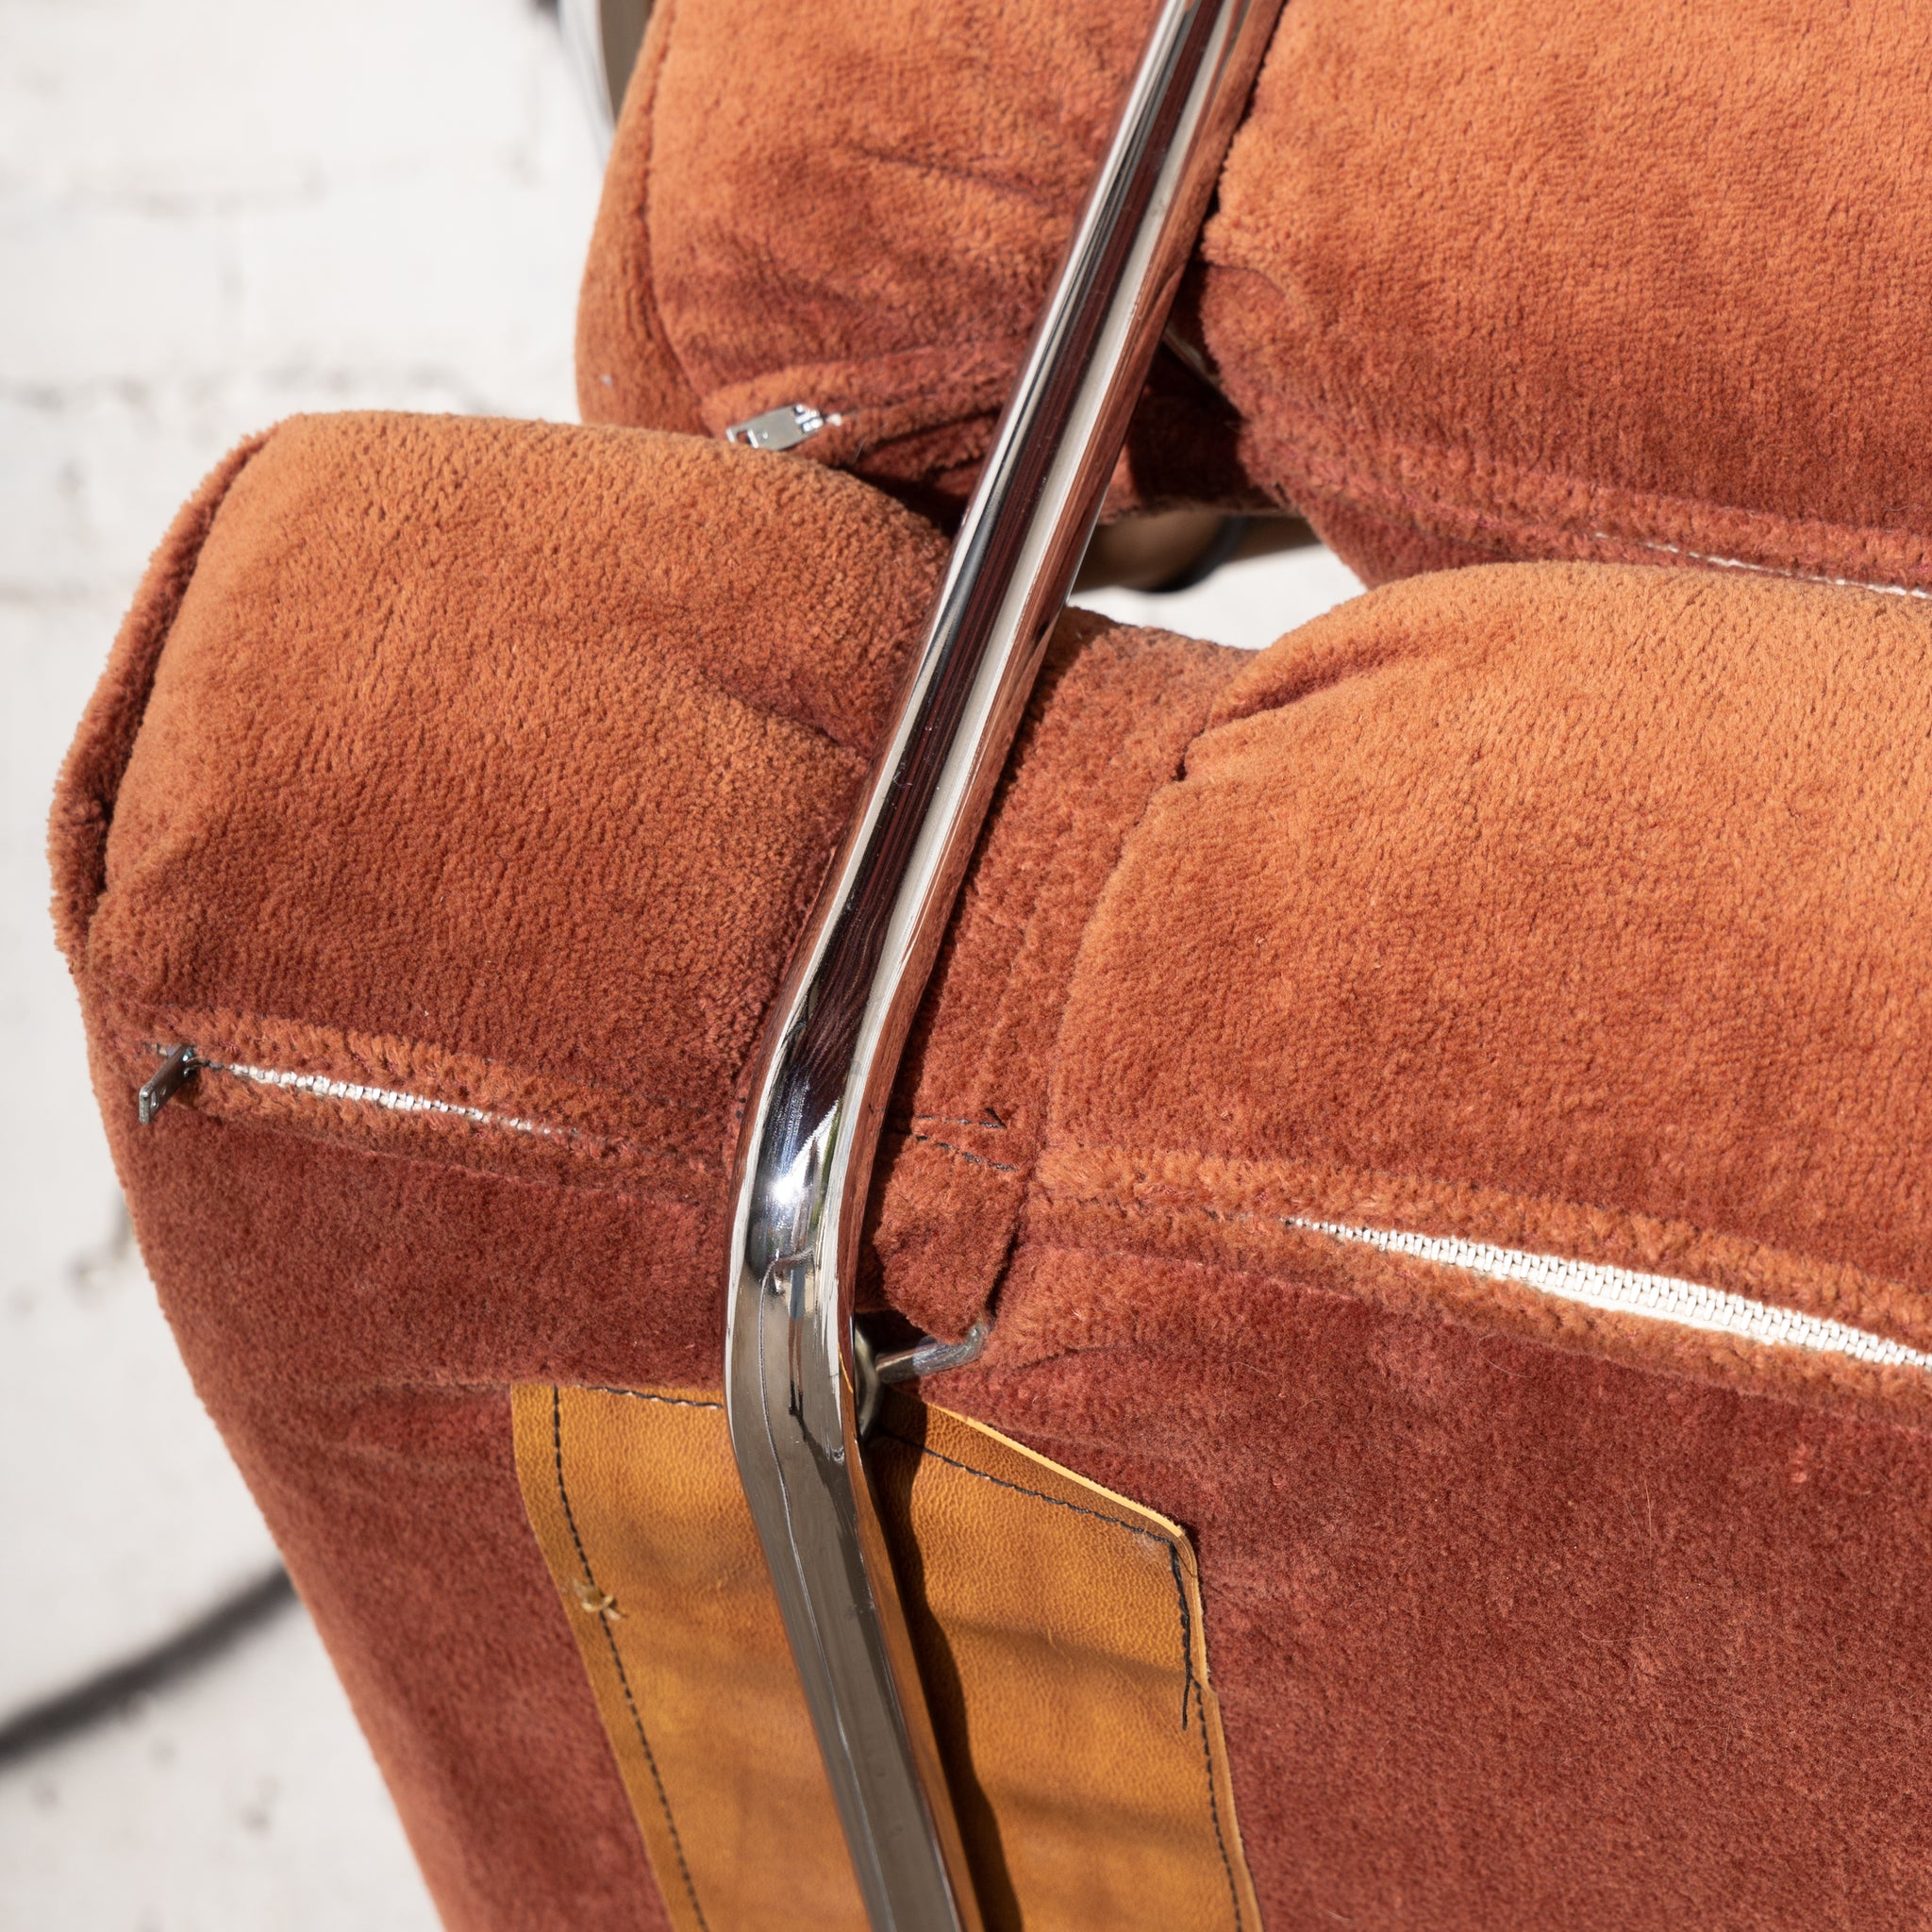 70s Tubular Chrome Cantilever Chair(s)